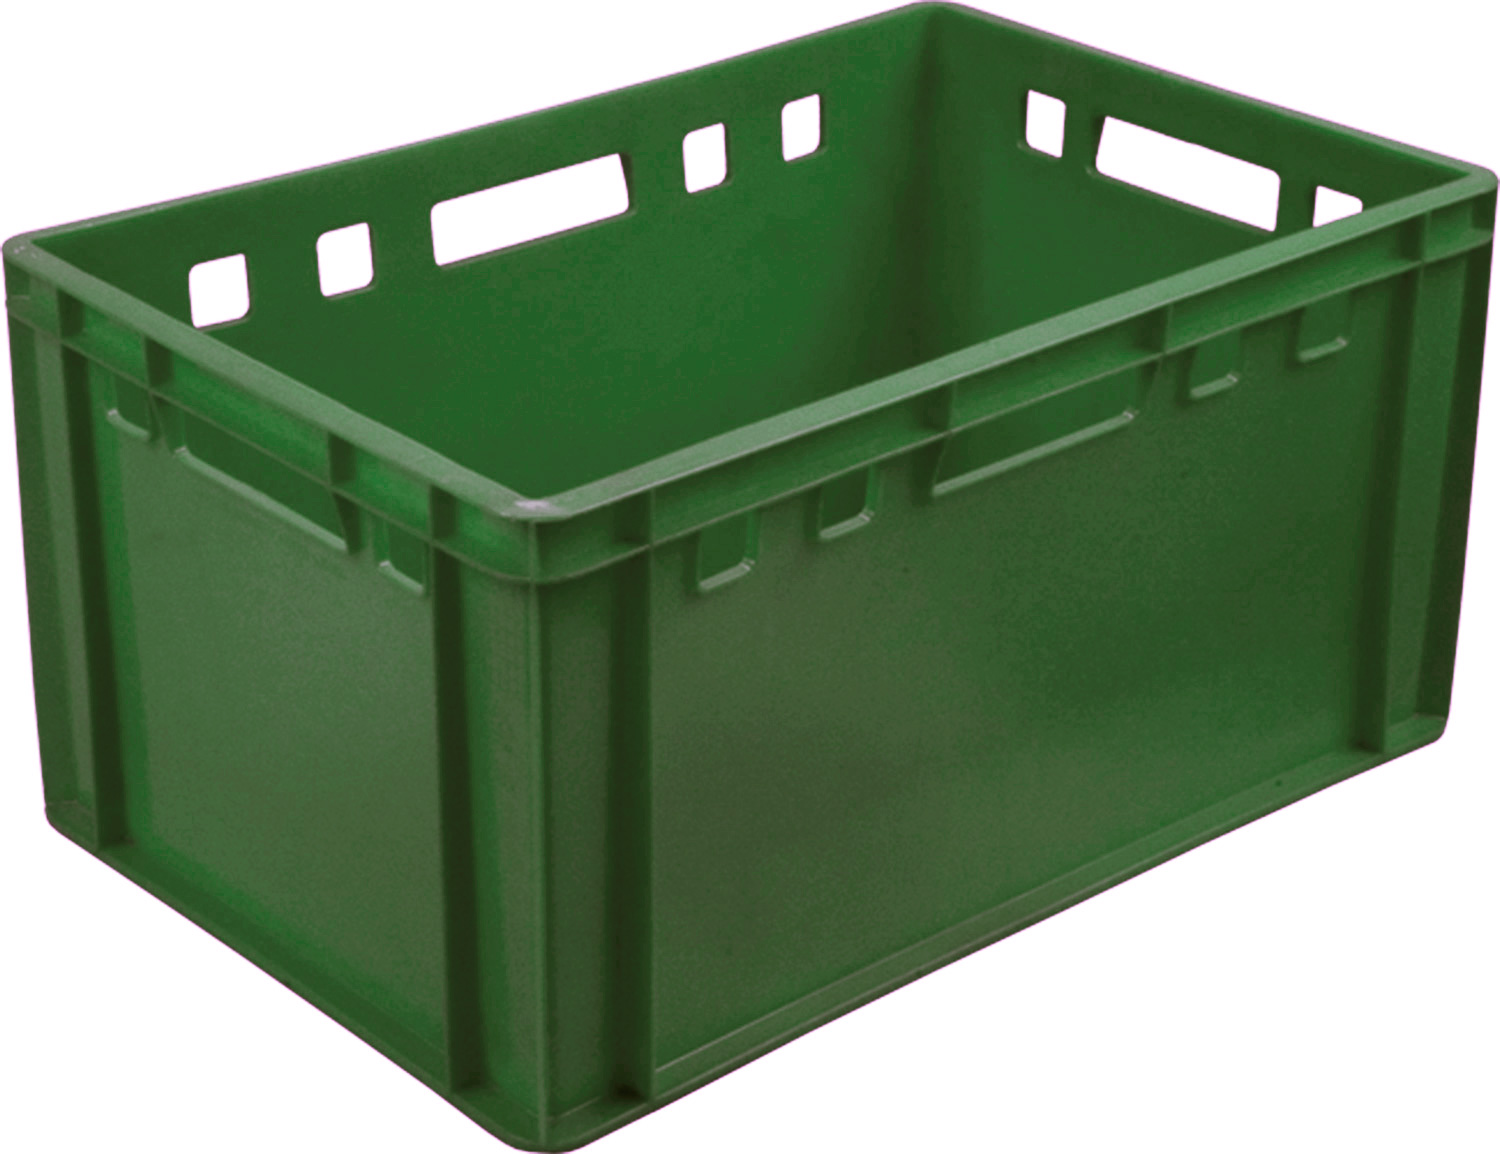 Ящик пищевой евроформат 210 размером 600х400х300 мм сплошной Е3 зеленый для мясных продуктов